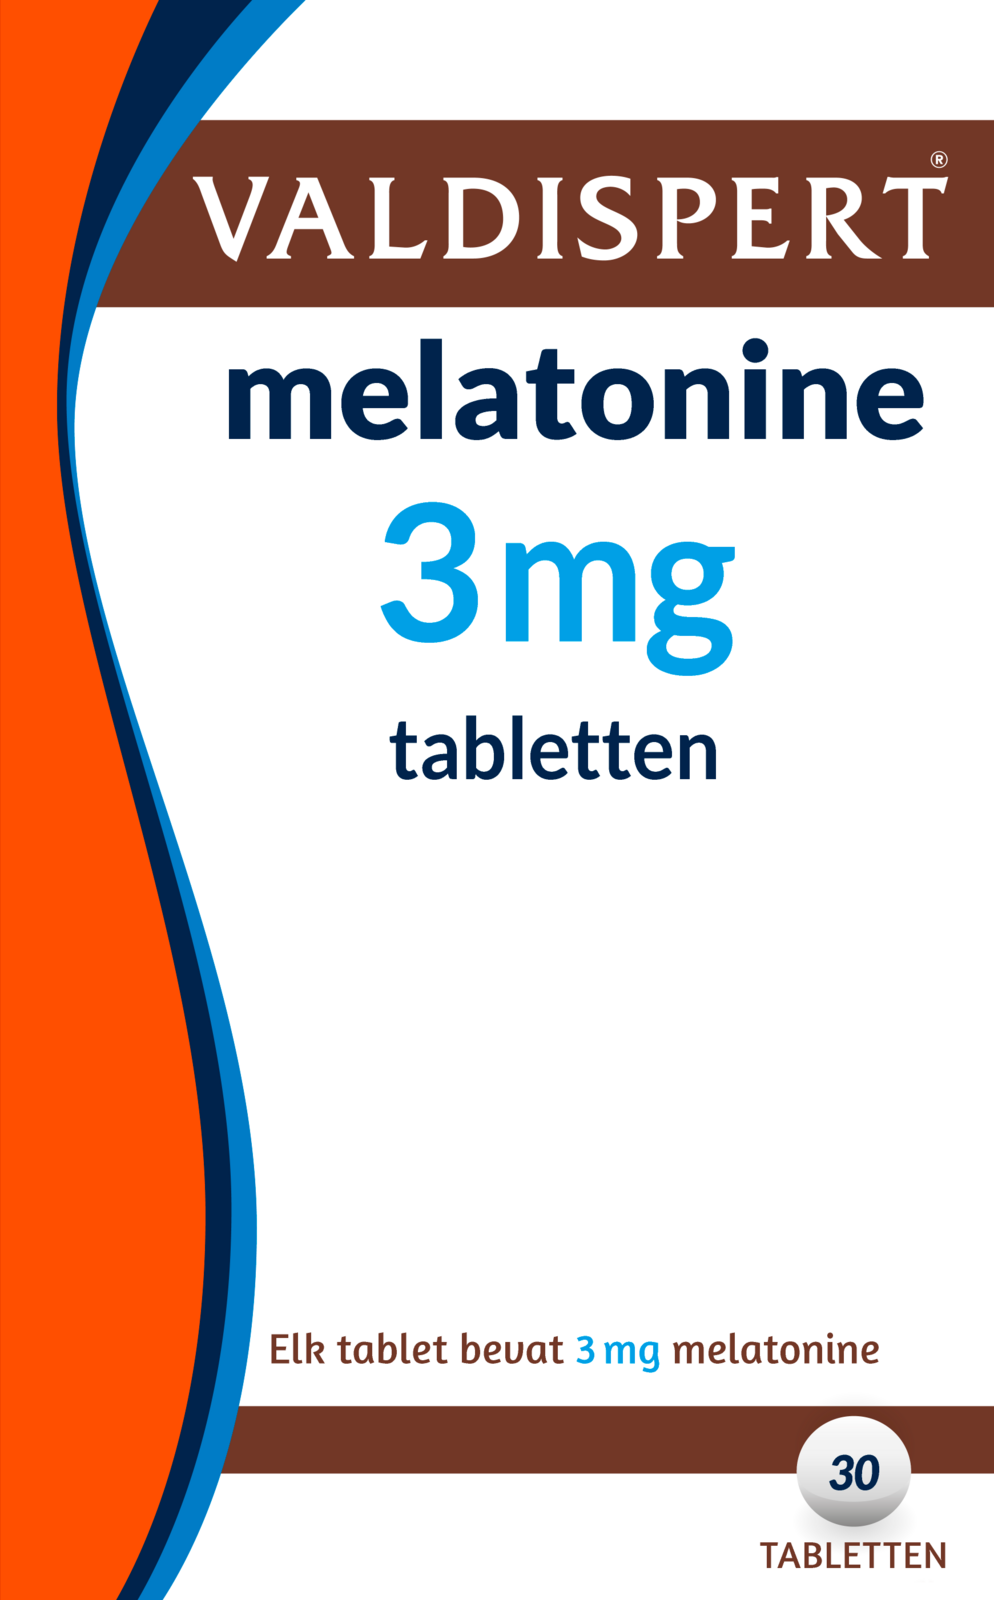 Valdispert melatonine 3mg tabletten helpt bij het verlichten van de ervaringen van een jetlag. dit gunstige ...